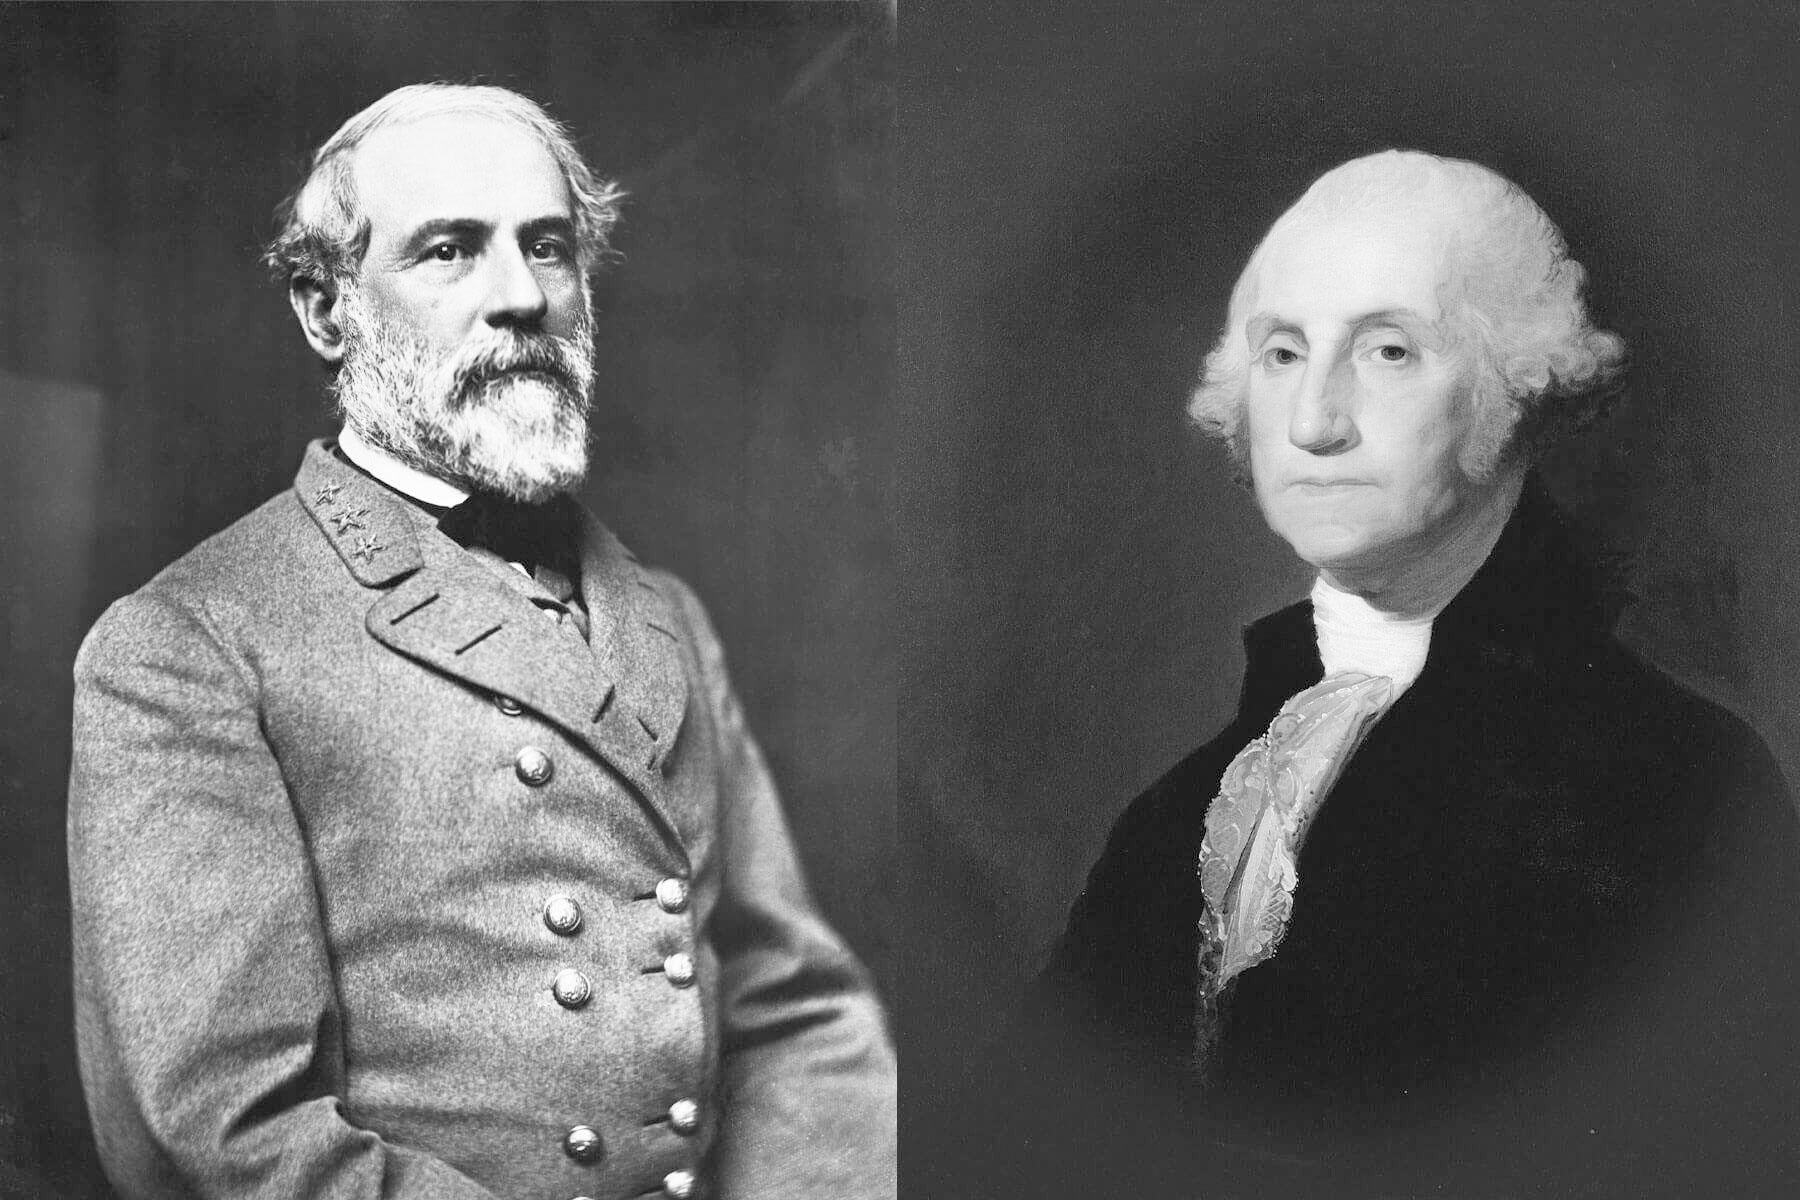 Robert E. Lee & George Washington